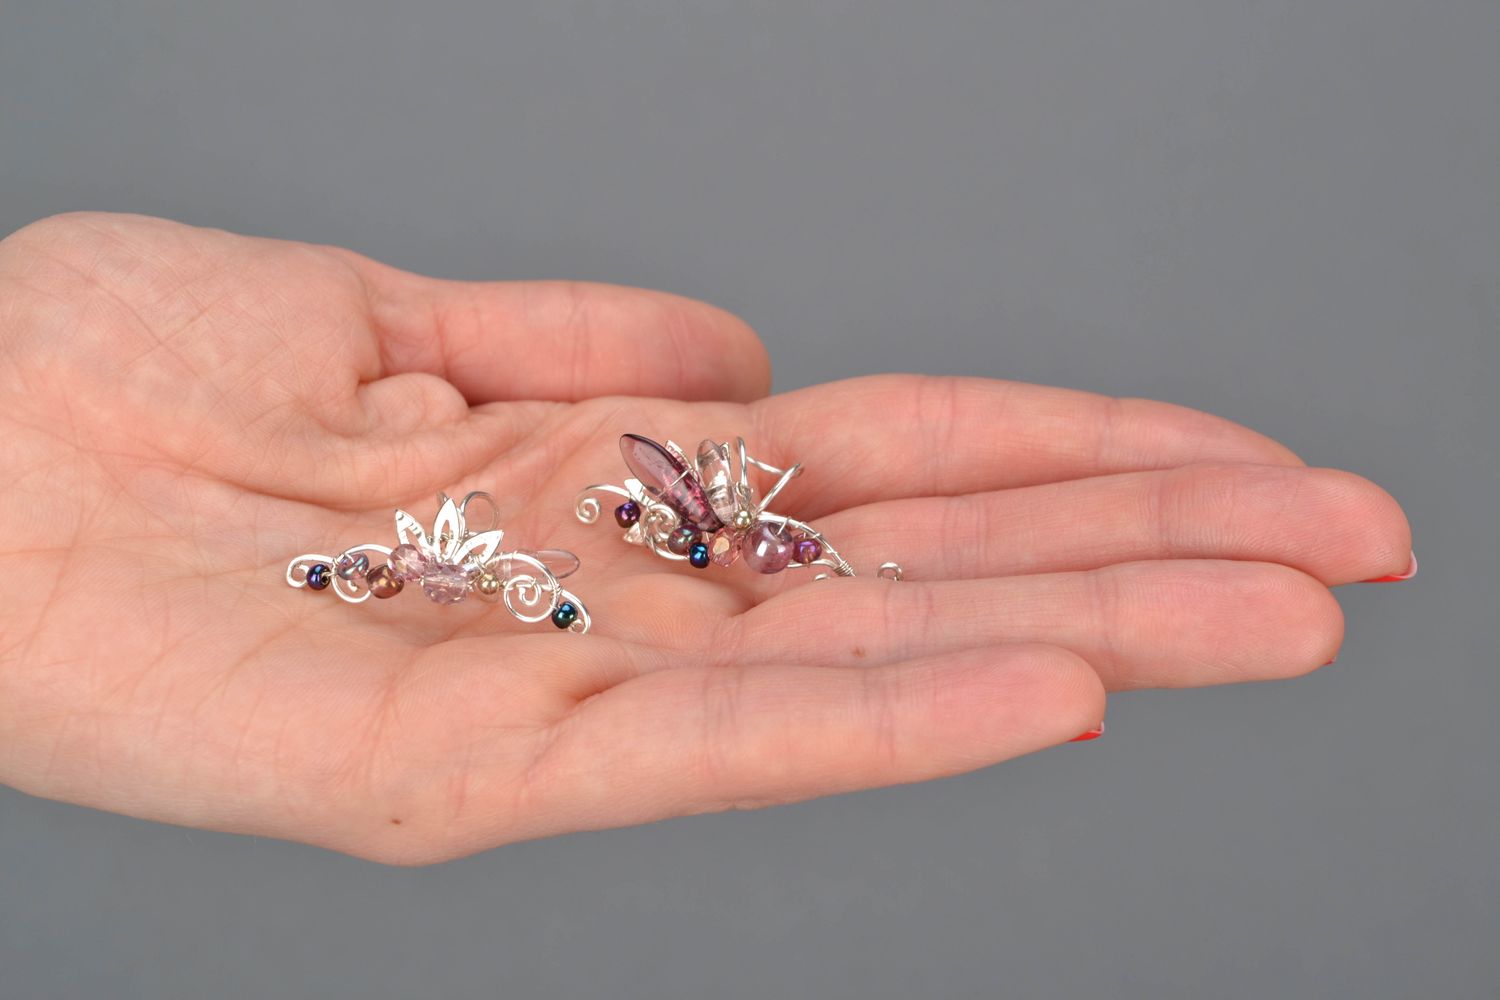 Boucles d'oreilles cuff en métal avec perles de verre photo 2